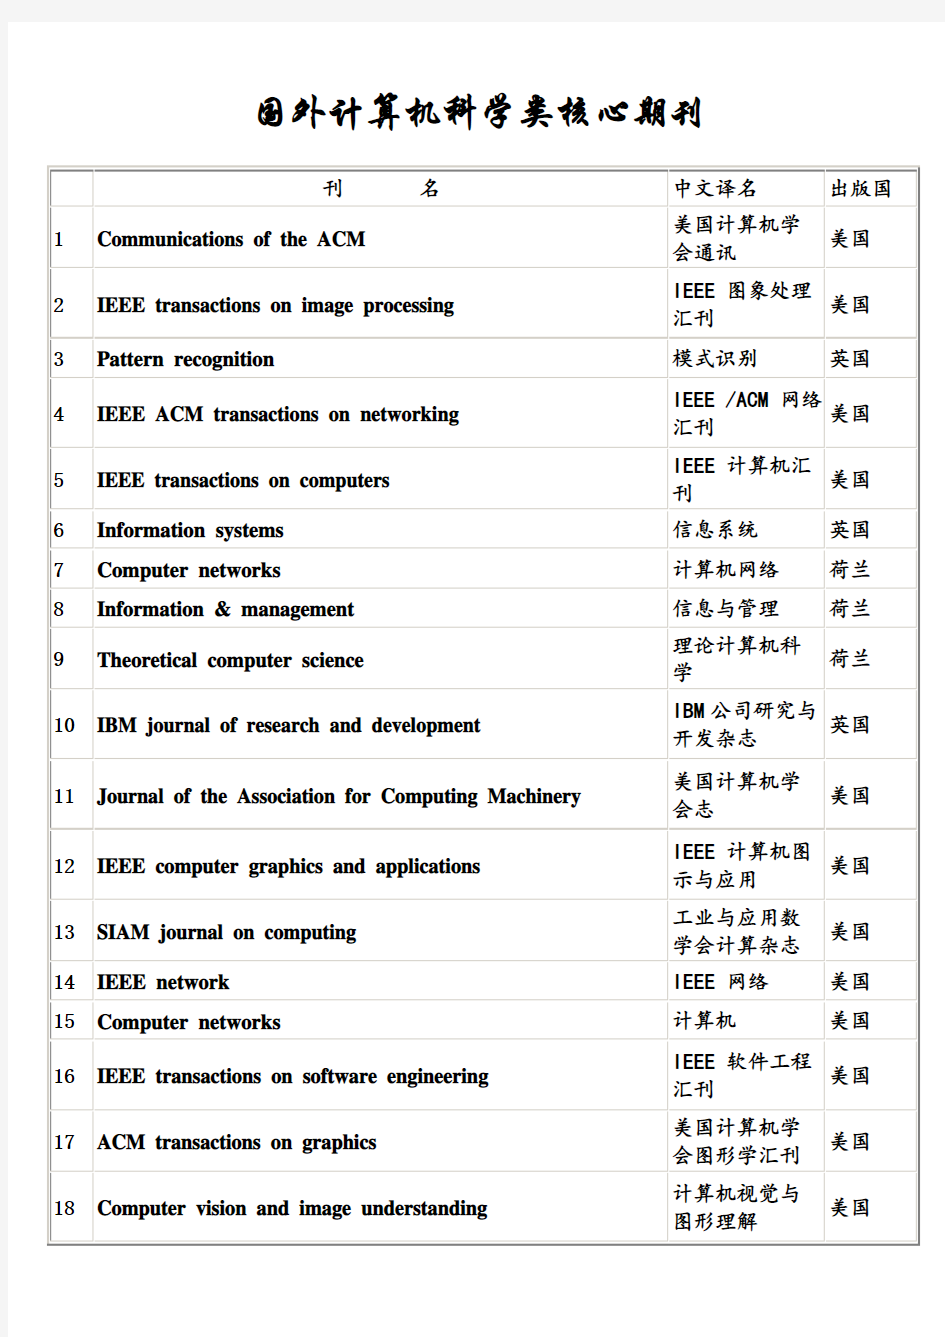 (参考)国外计算机类核心期刊列表